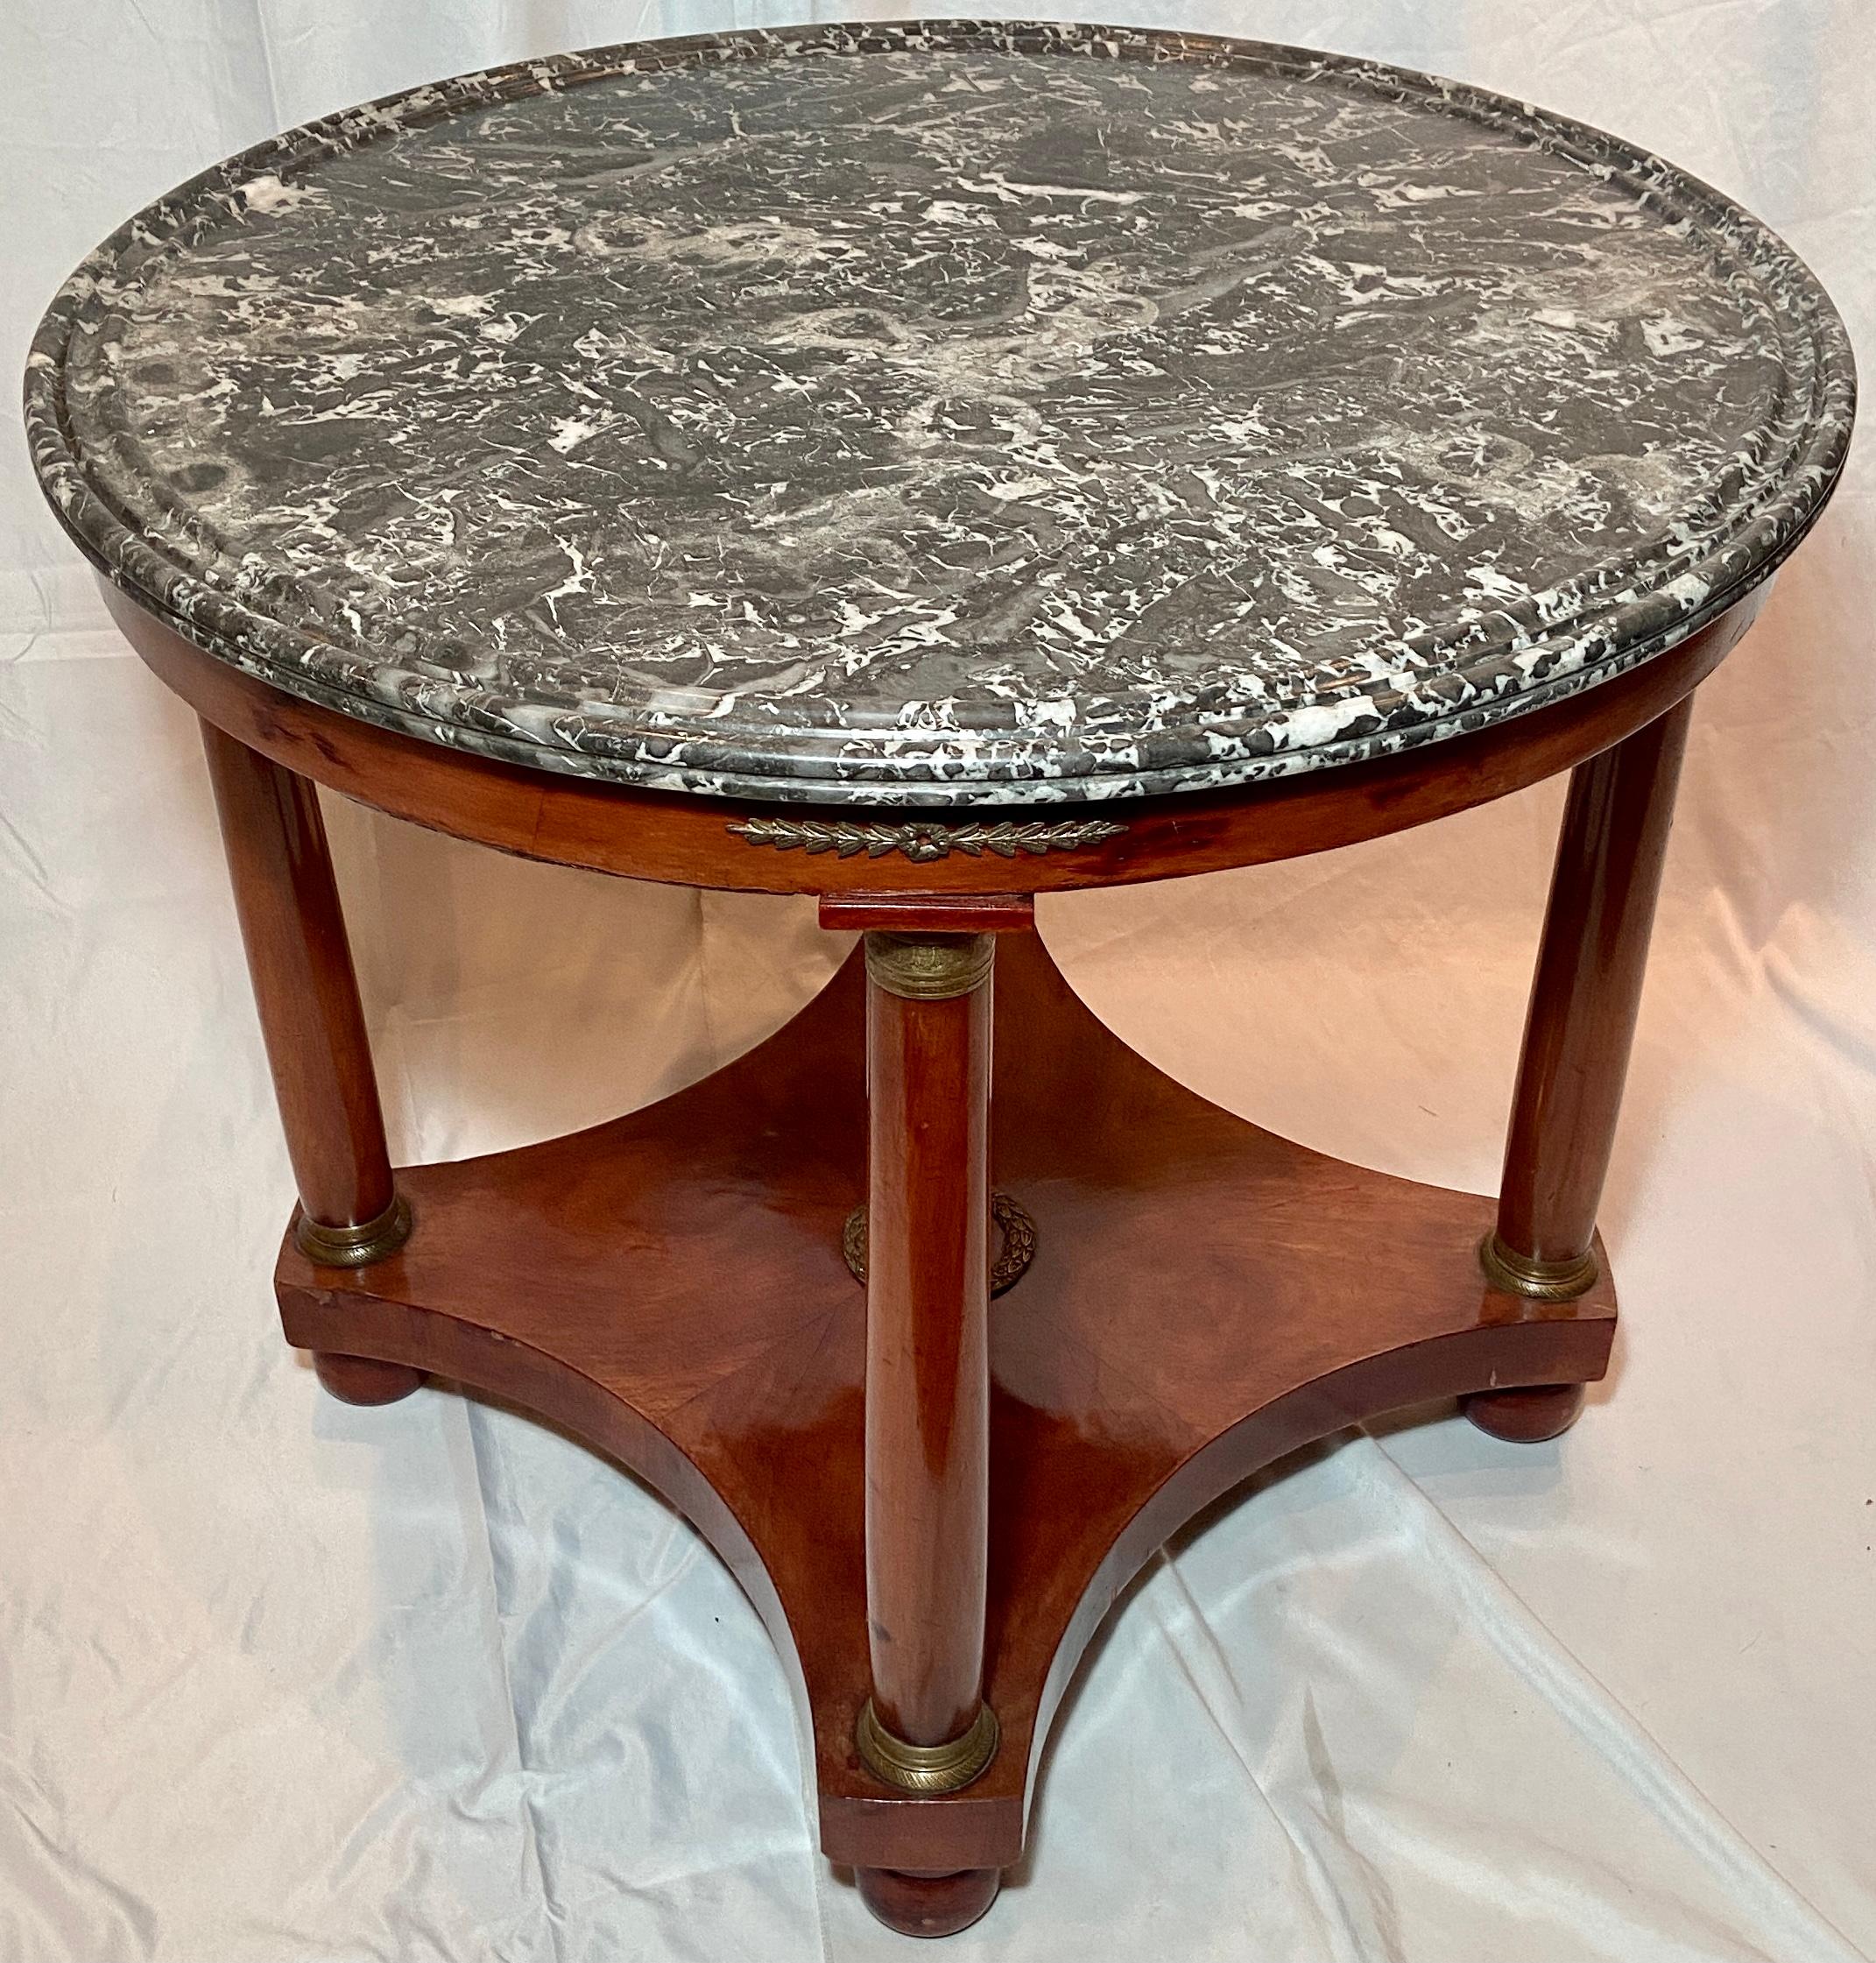 Table de centre en acajou anciennement Empire français monté en bronze et marbre Circa 1880.
Une très belle table en acajou avec les éléments décoratifs en bronze qui l'accompagnent.